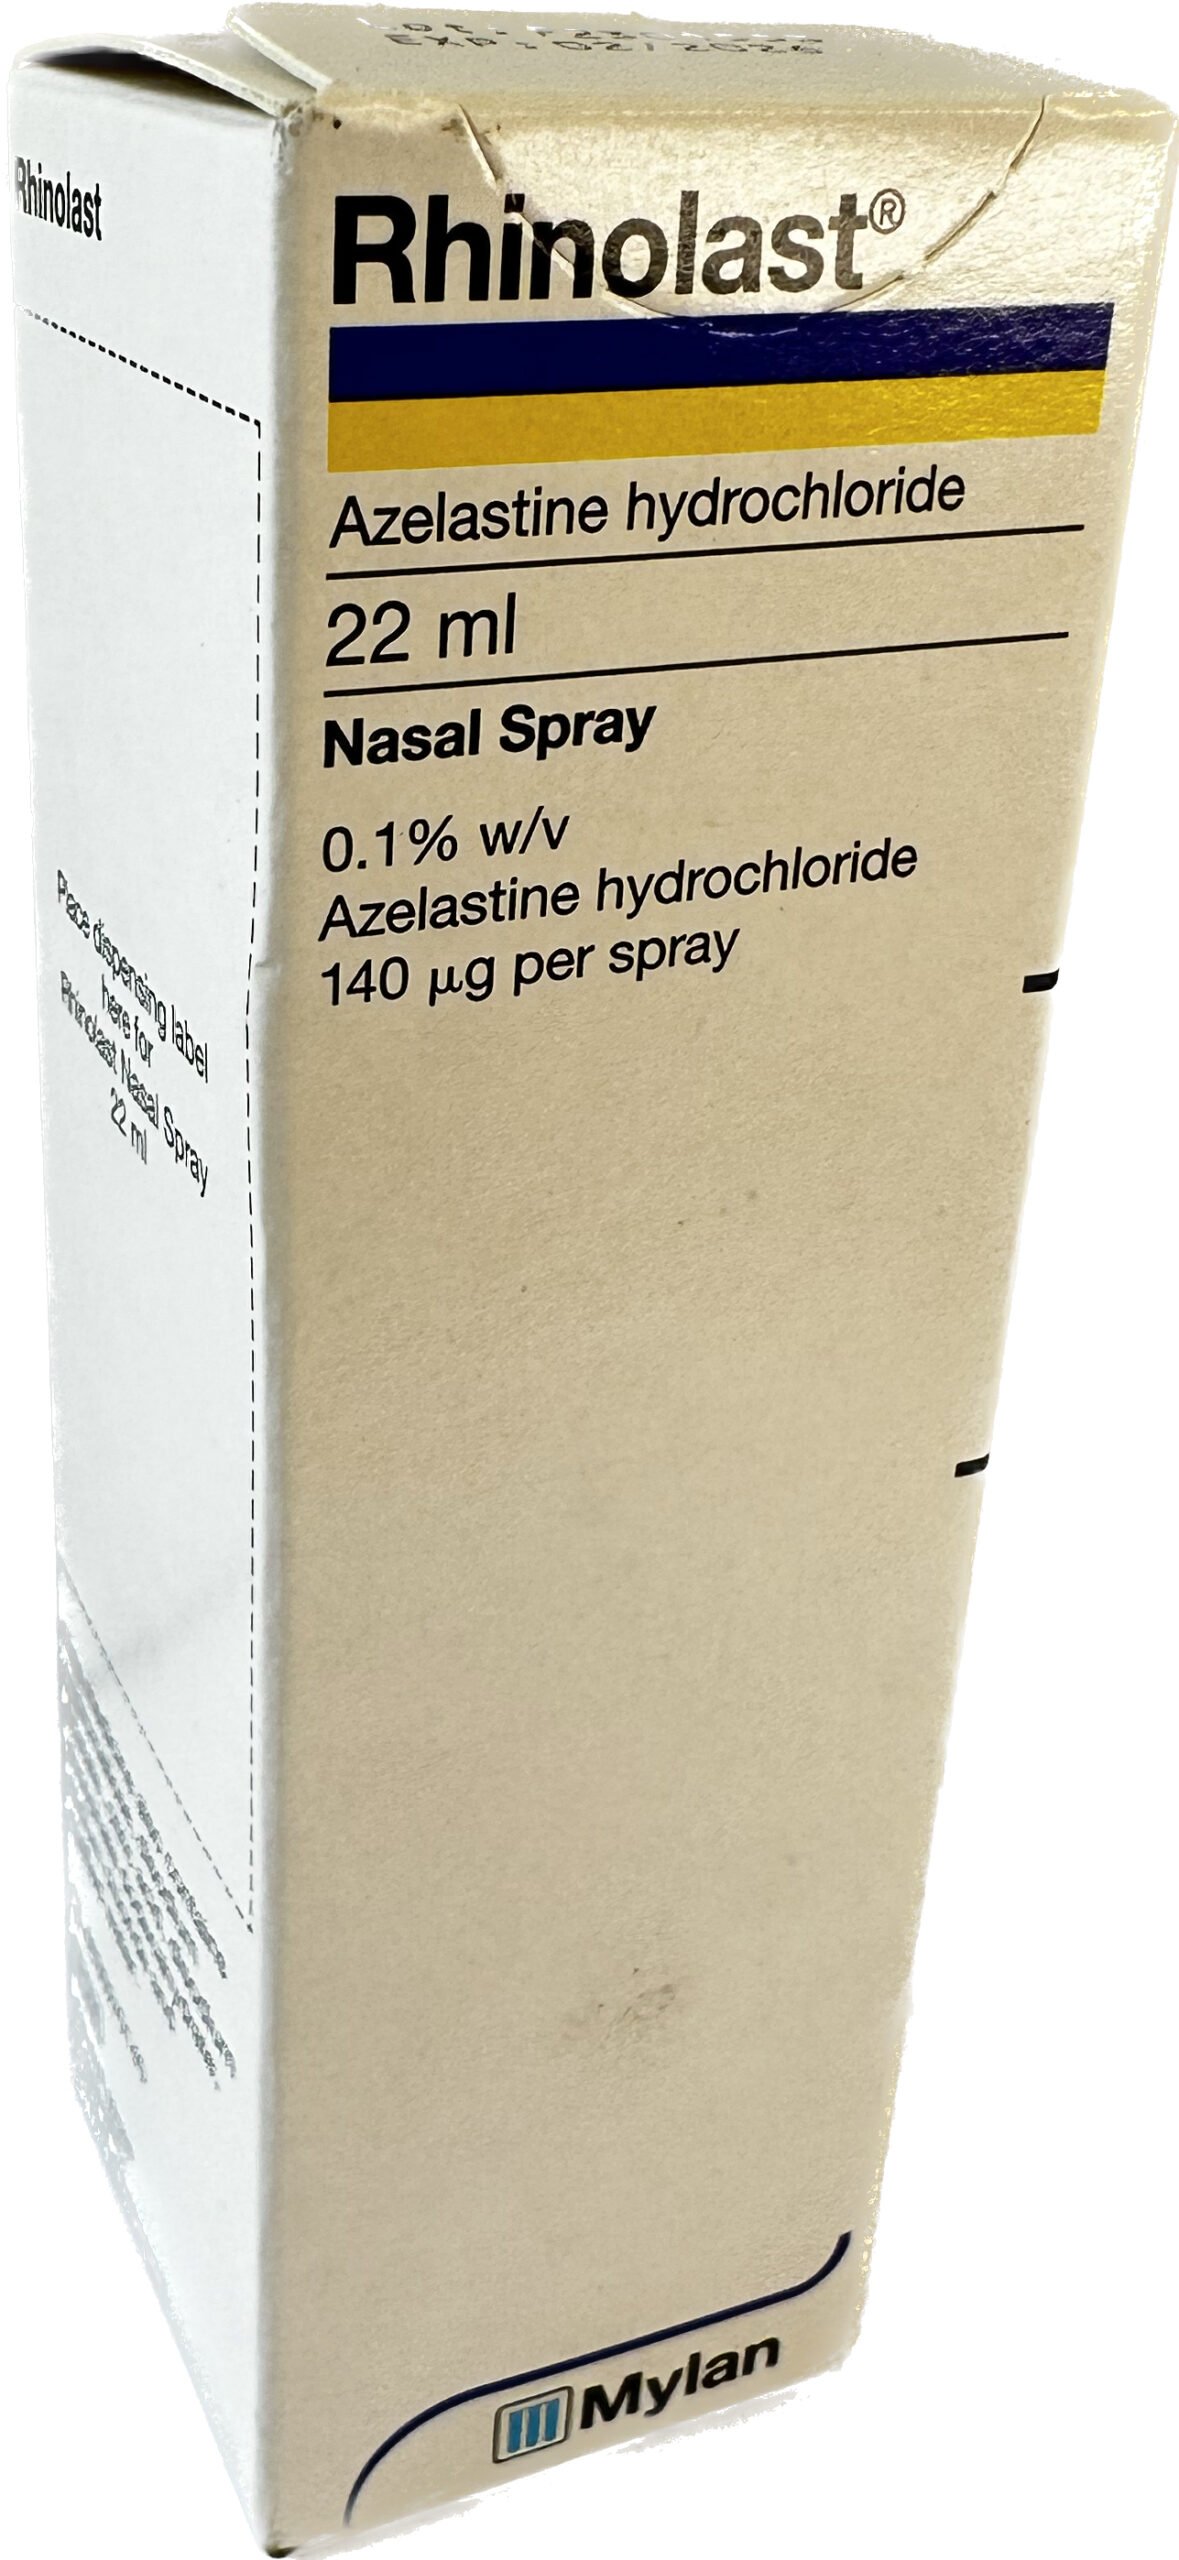 Rhinolast nasal spray